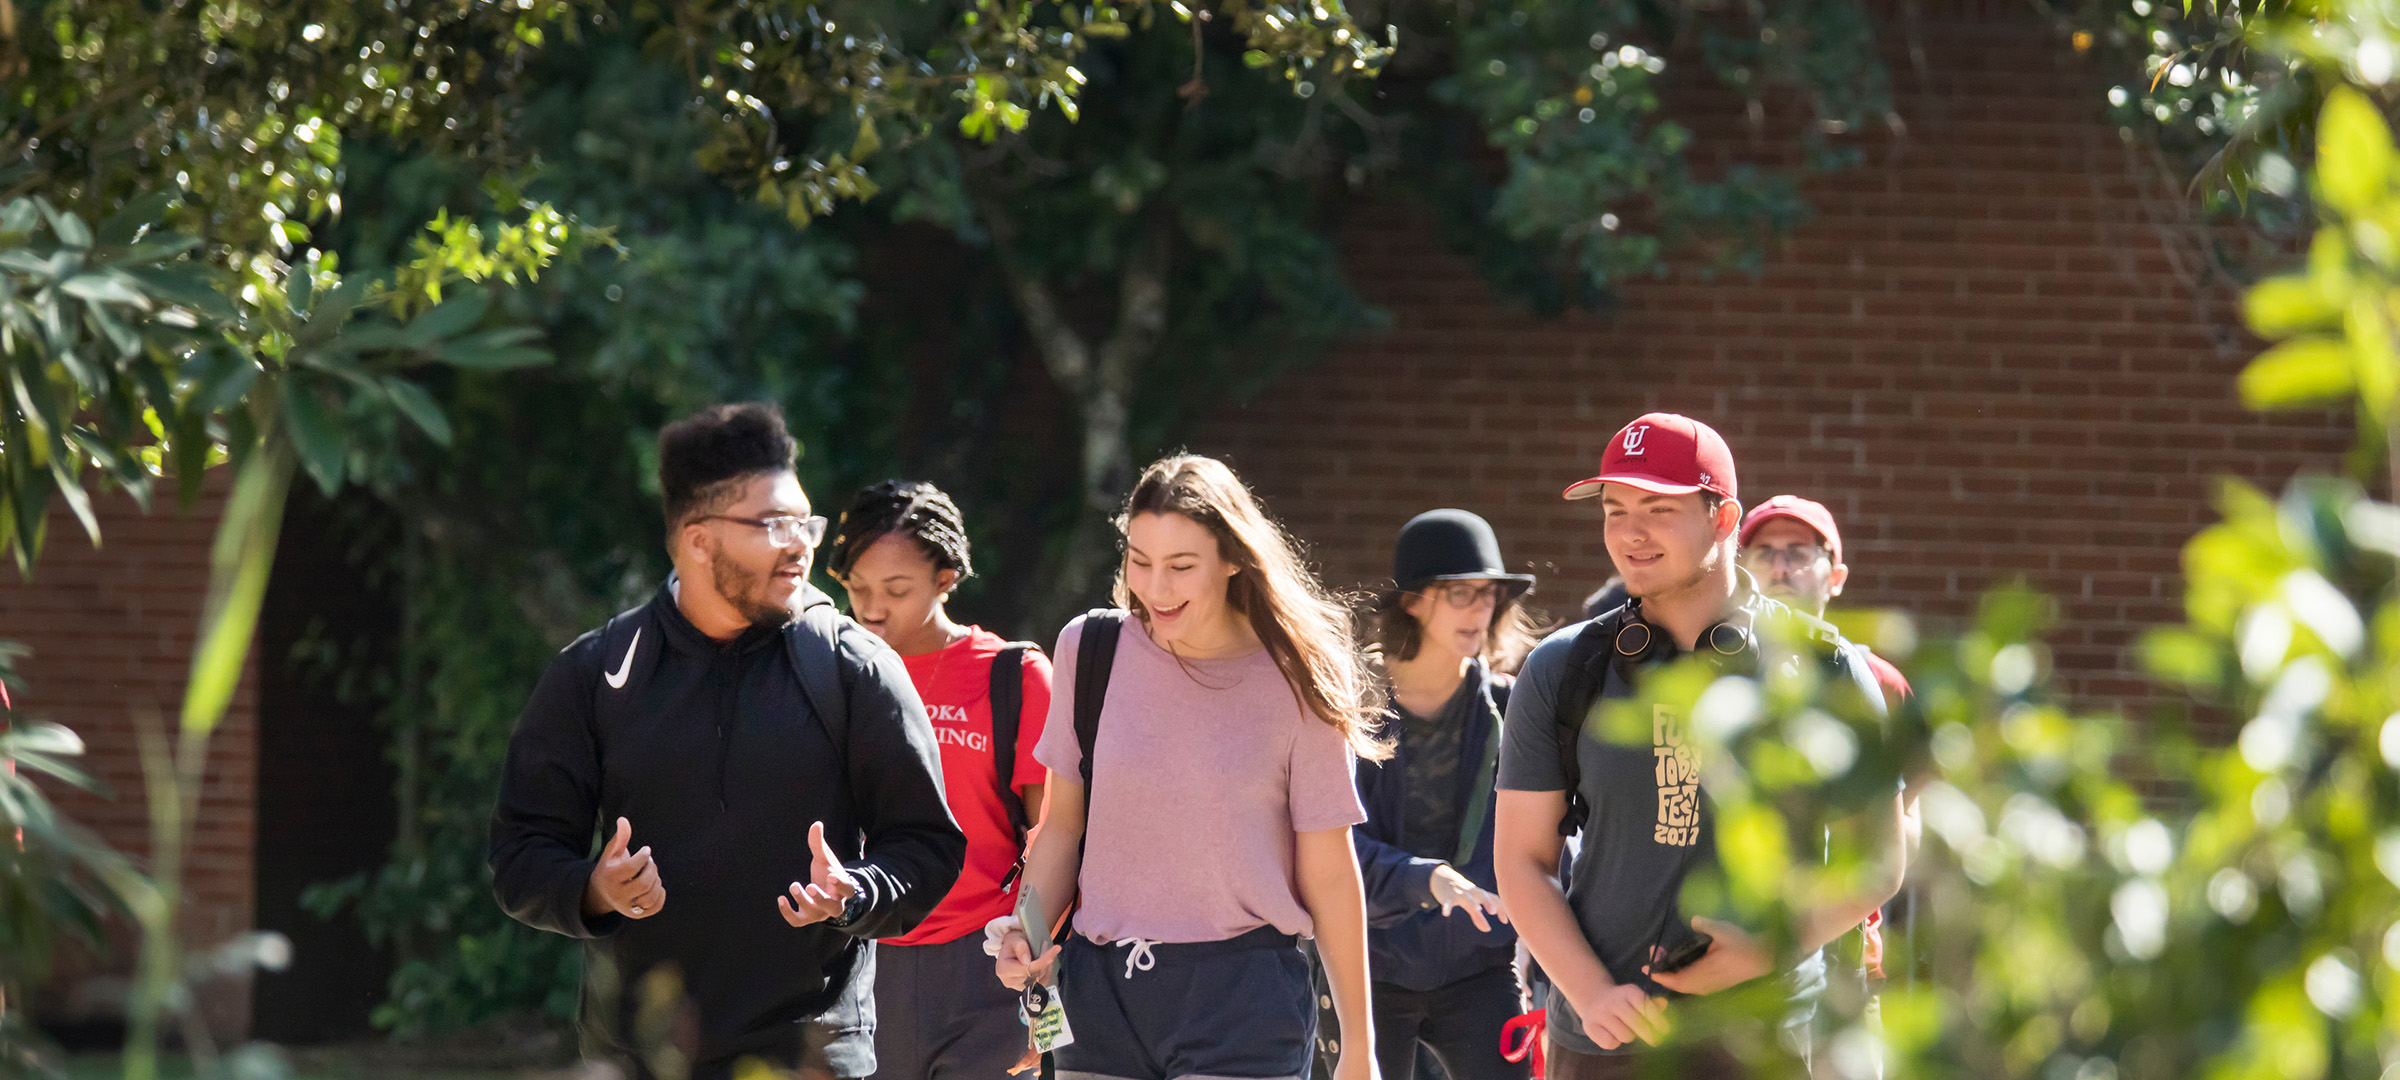 鶹ҹ students walking on campus